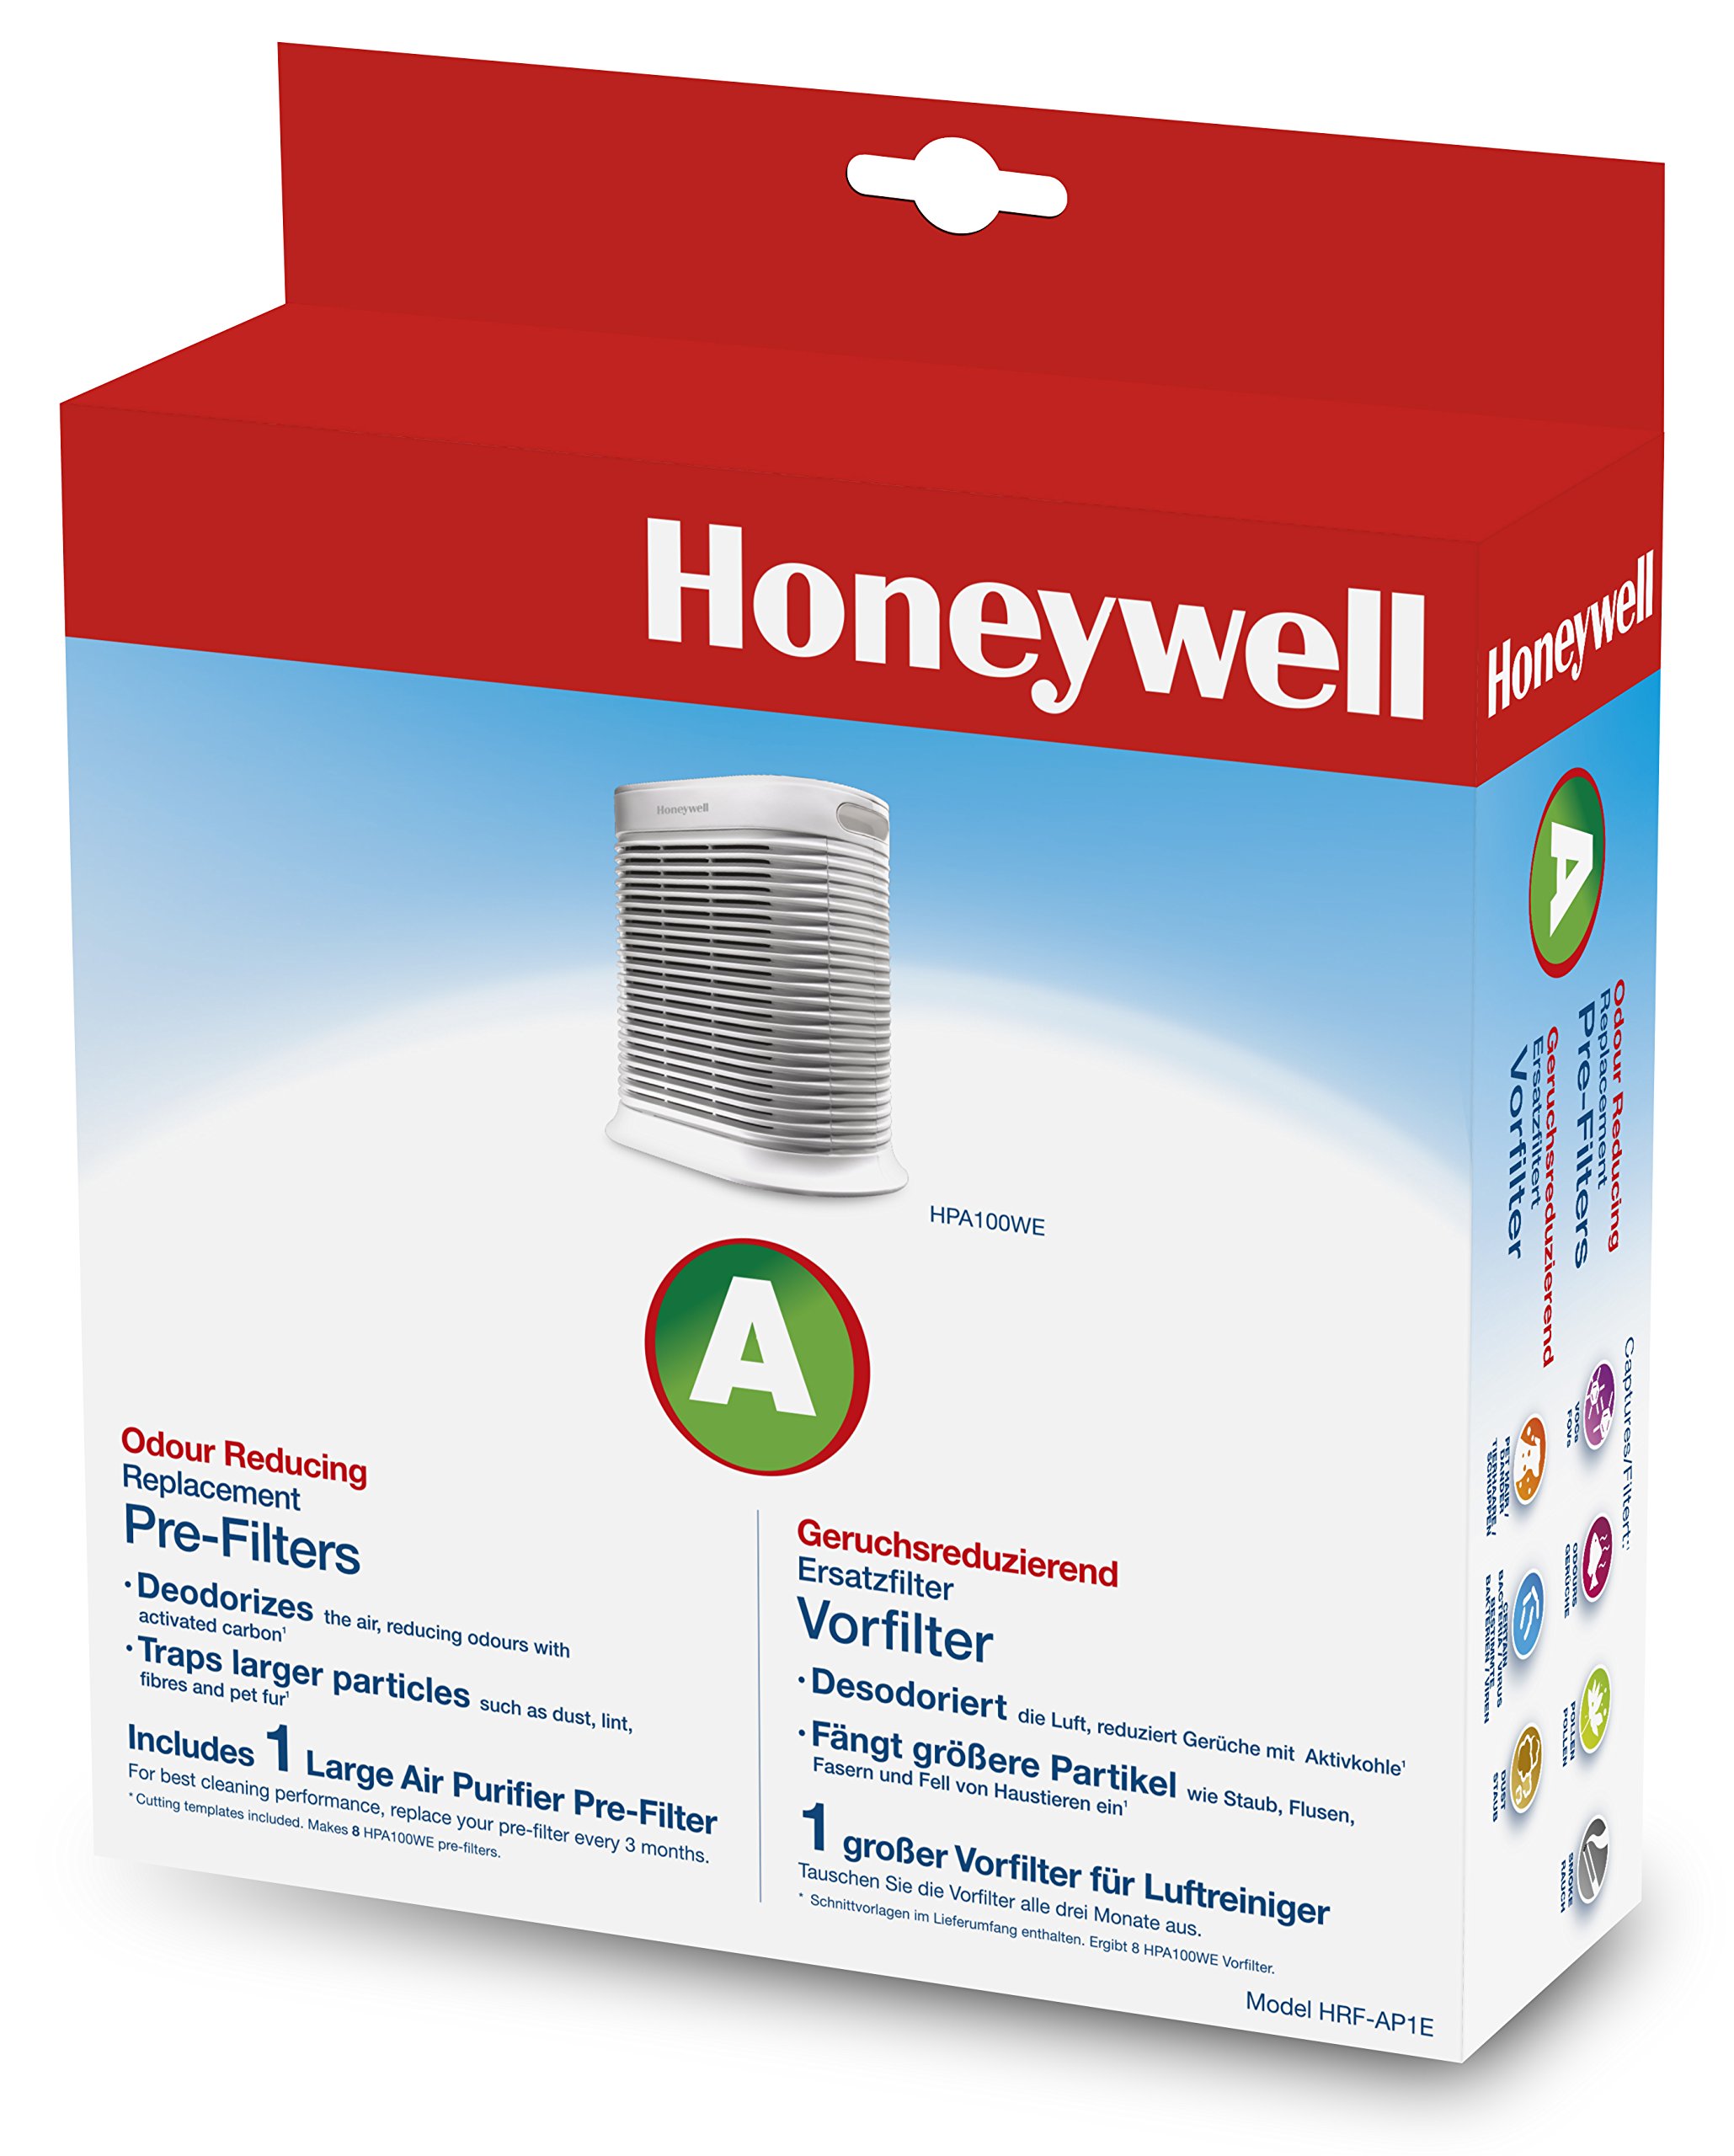 Honeywell Geruchsreduzierender Ersatzfilter HRF-AP1E für die Anwendung im Luftreiniger HPA100WE, 1 Stück